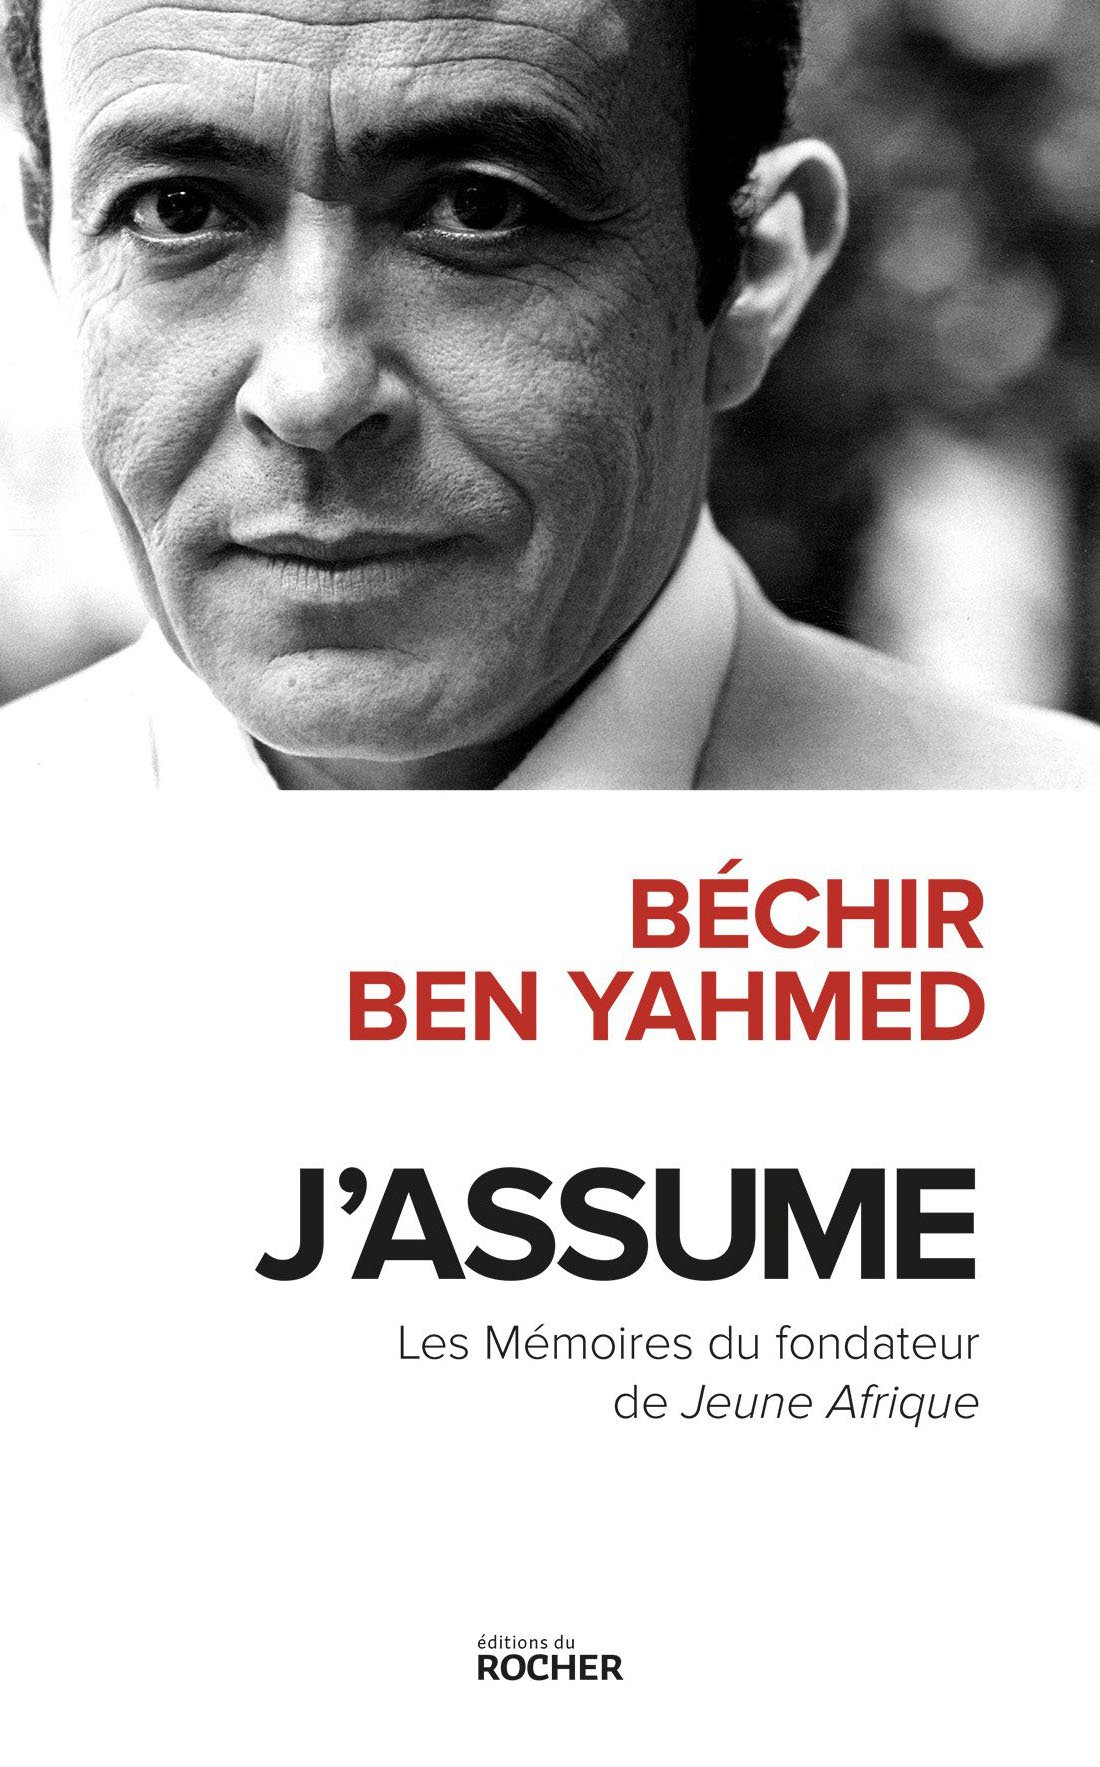 Béchir Ben Yahmed, fondateur de Jeune Afrique. &copy; JA